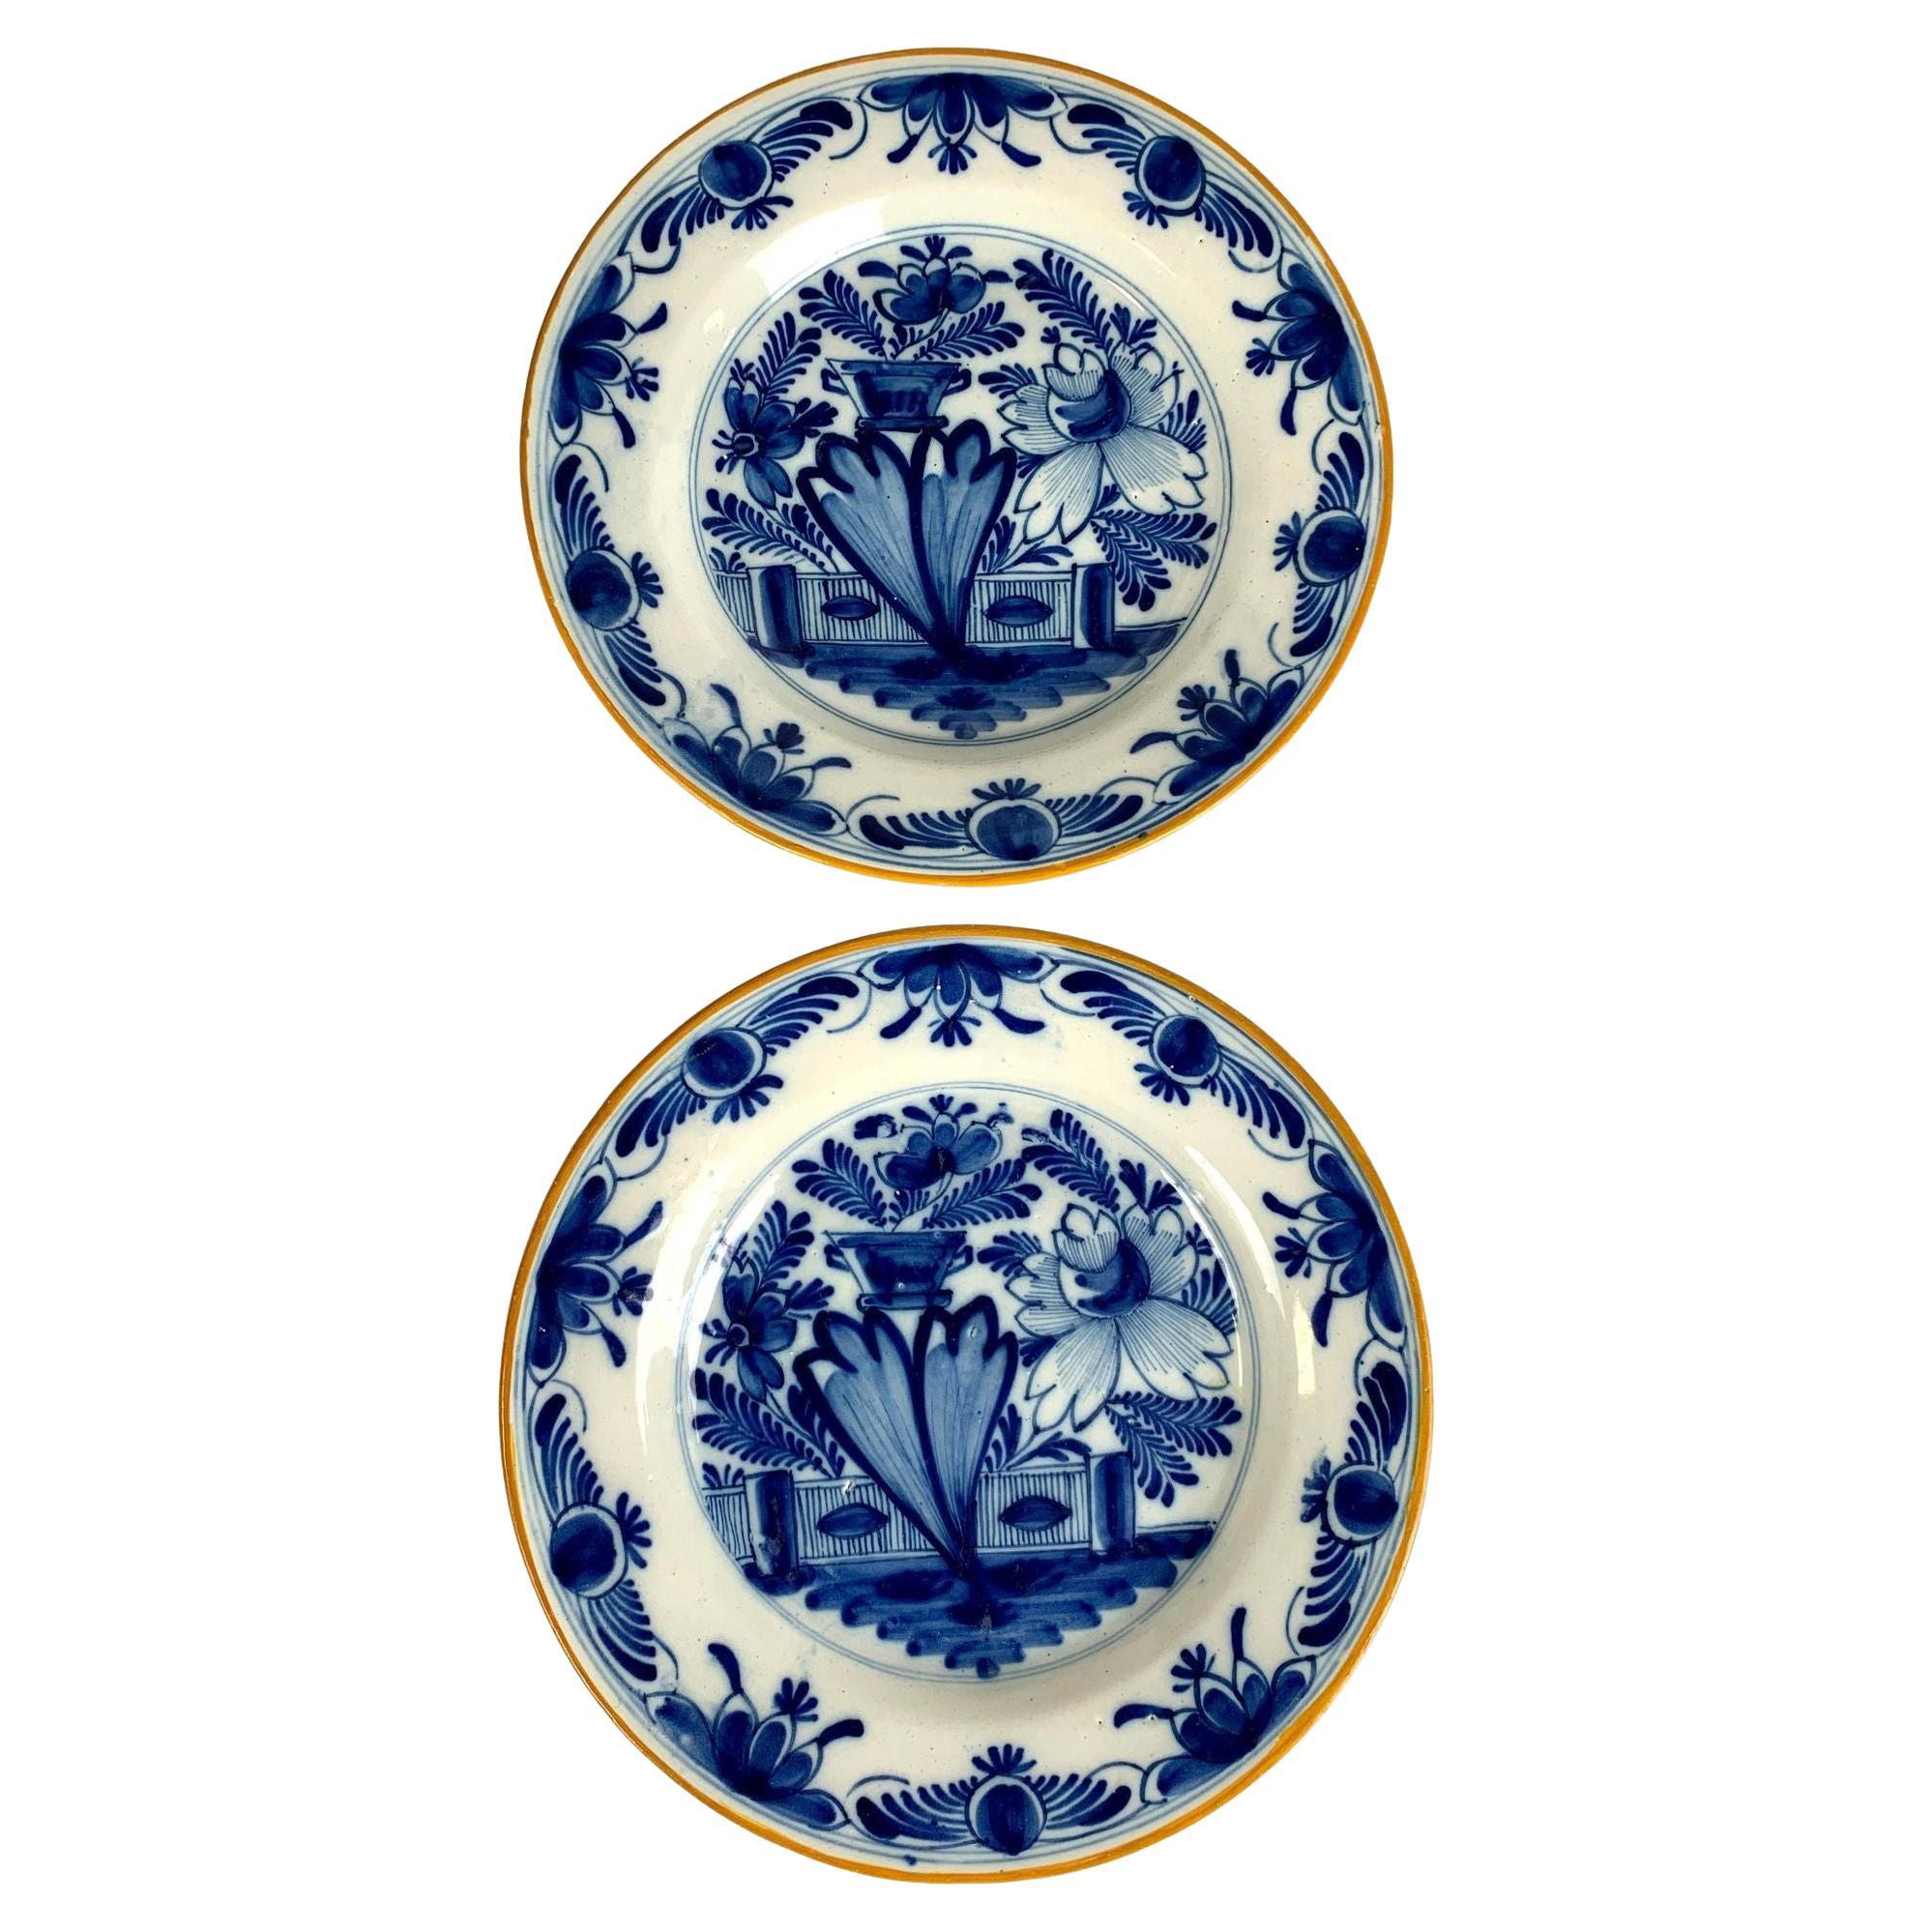 Paar blaue und weiße Delft-Teller oder -Gerichte, handbemalt, Niederlande, um 1800